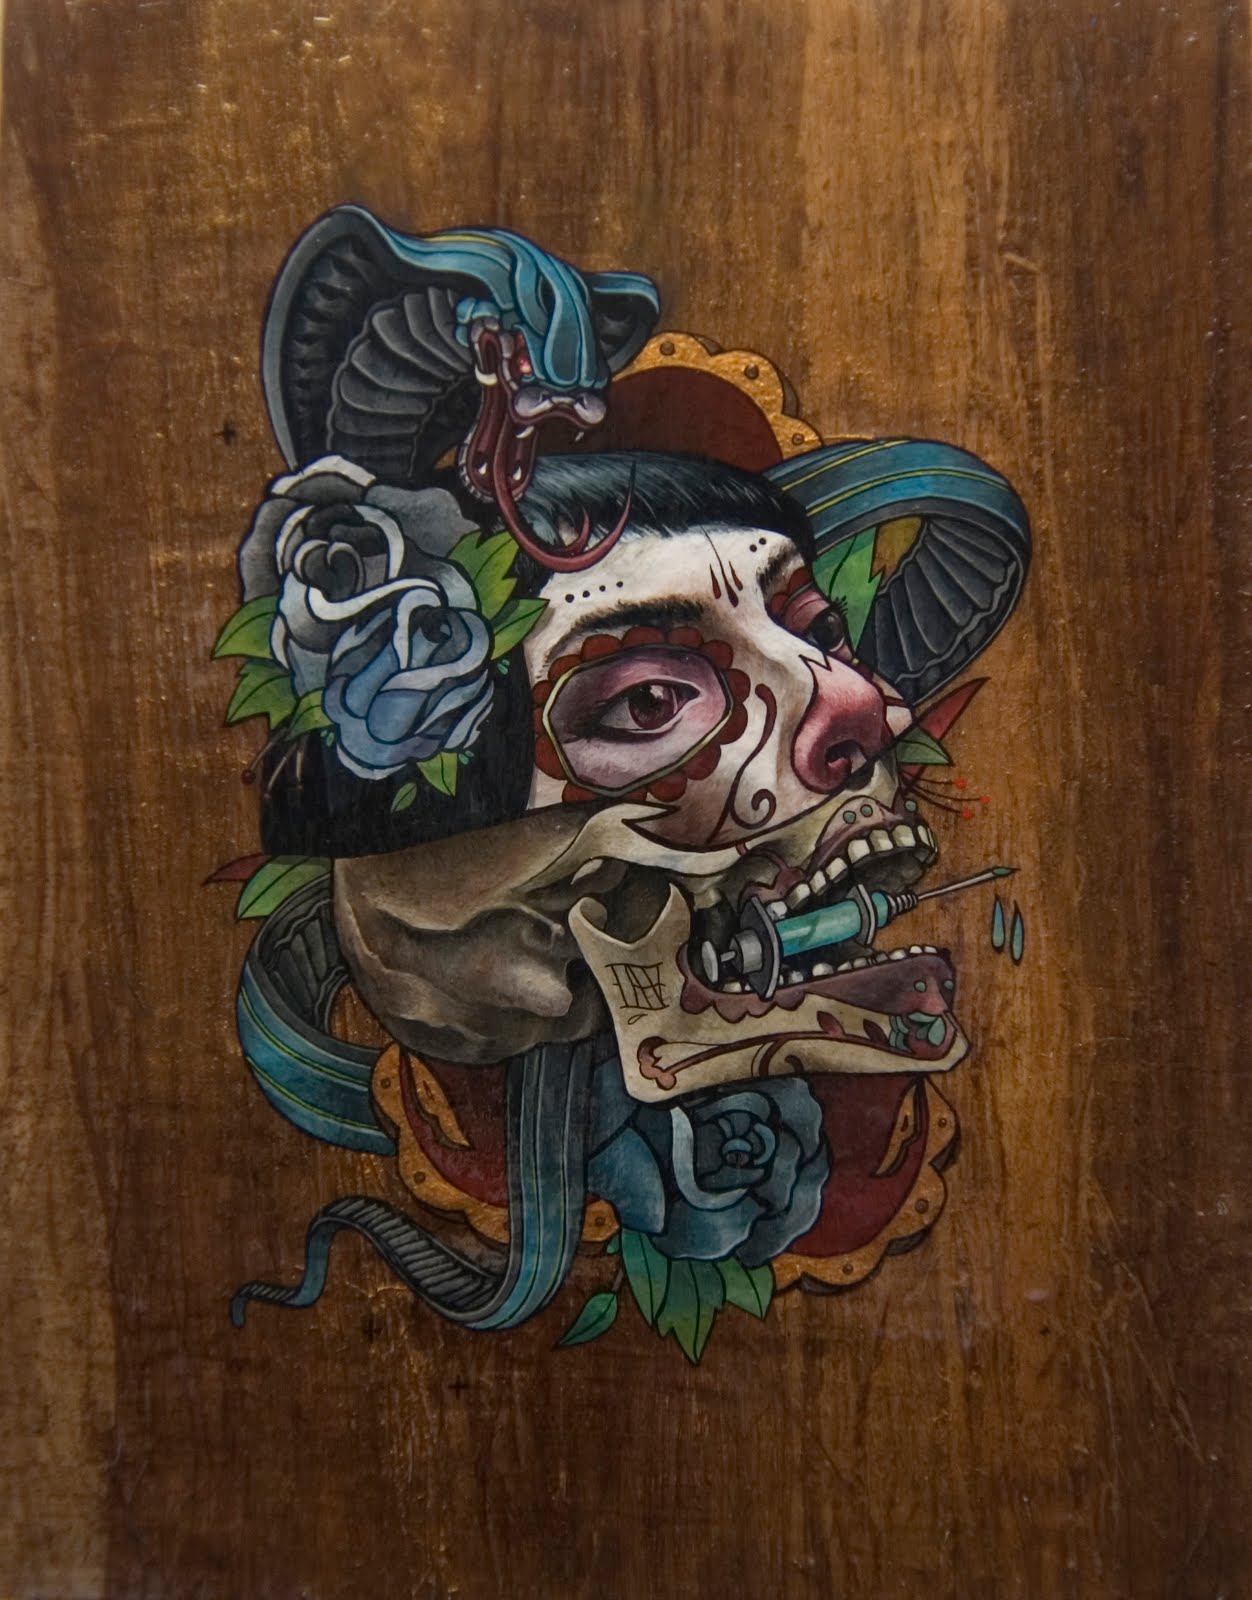 Acrylic Ink on wood, Sugar Skull. March, 2010